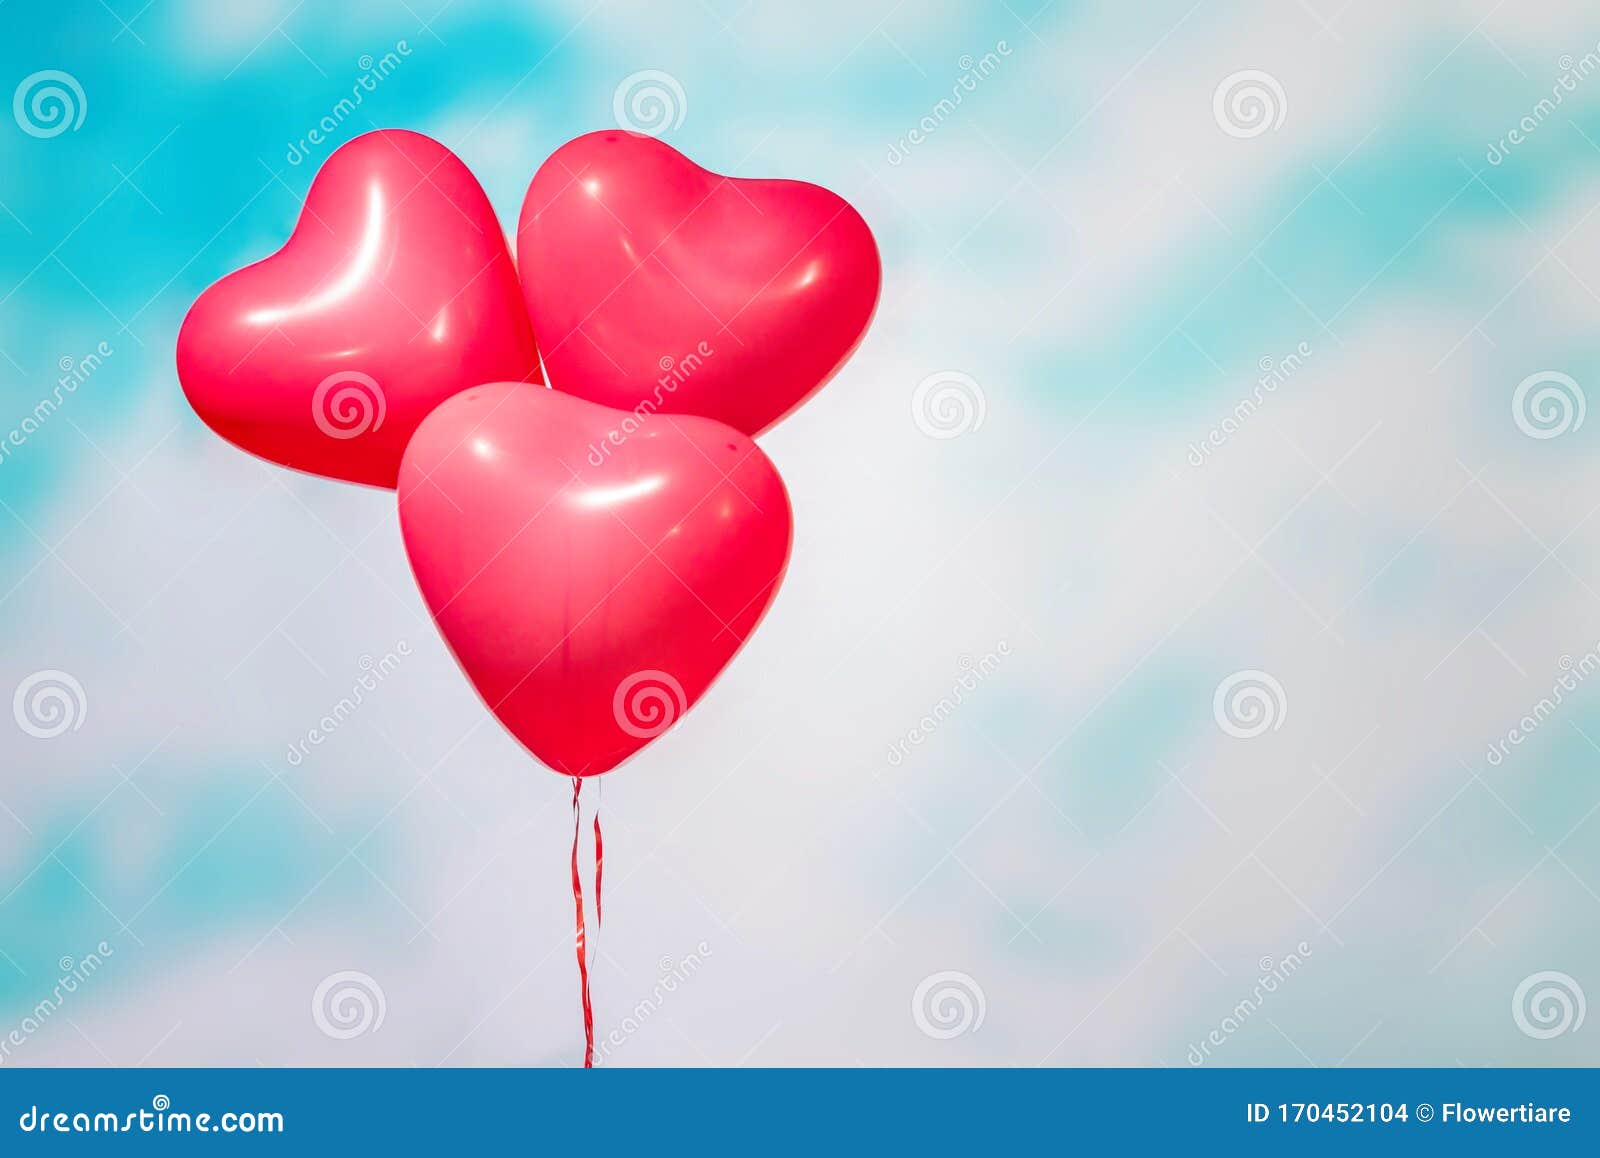 https://thumbs.dreamstime.com/z/tre-palloncini-rossi-forma-di-cuore-sullo-sfondo-del-cielo-nel-colore-blu-pastello-il-concetto-san-valentino-170452104.jpg